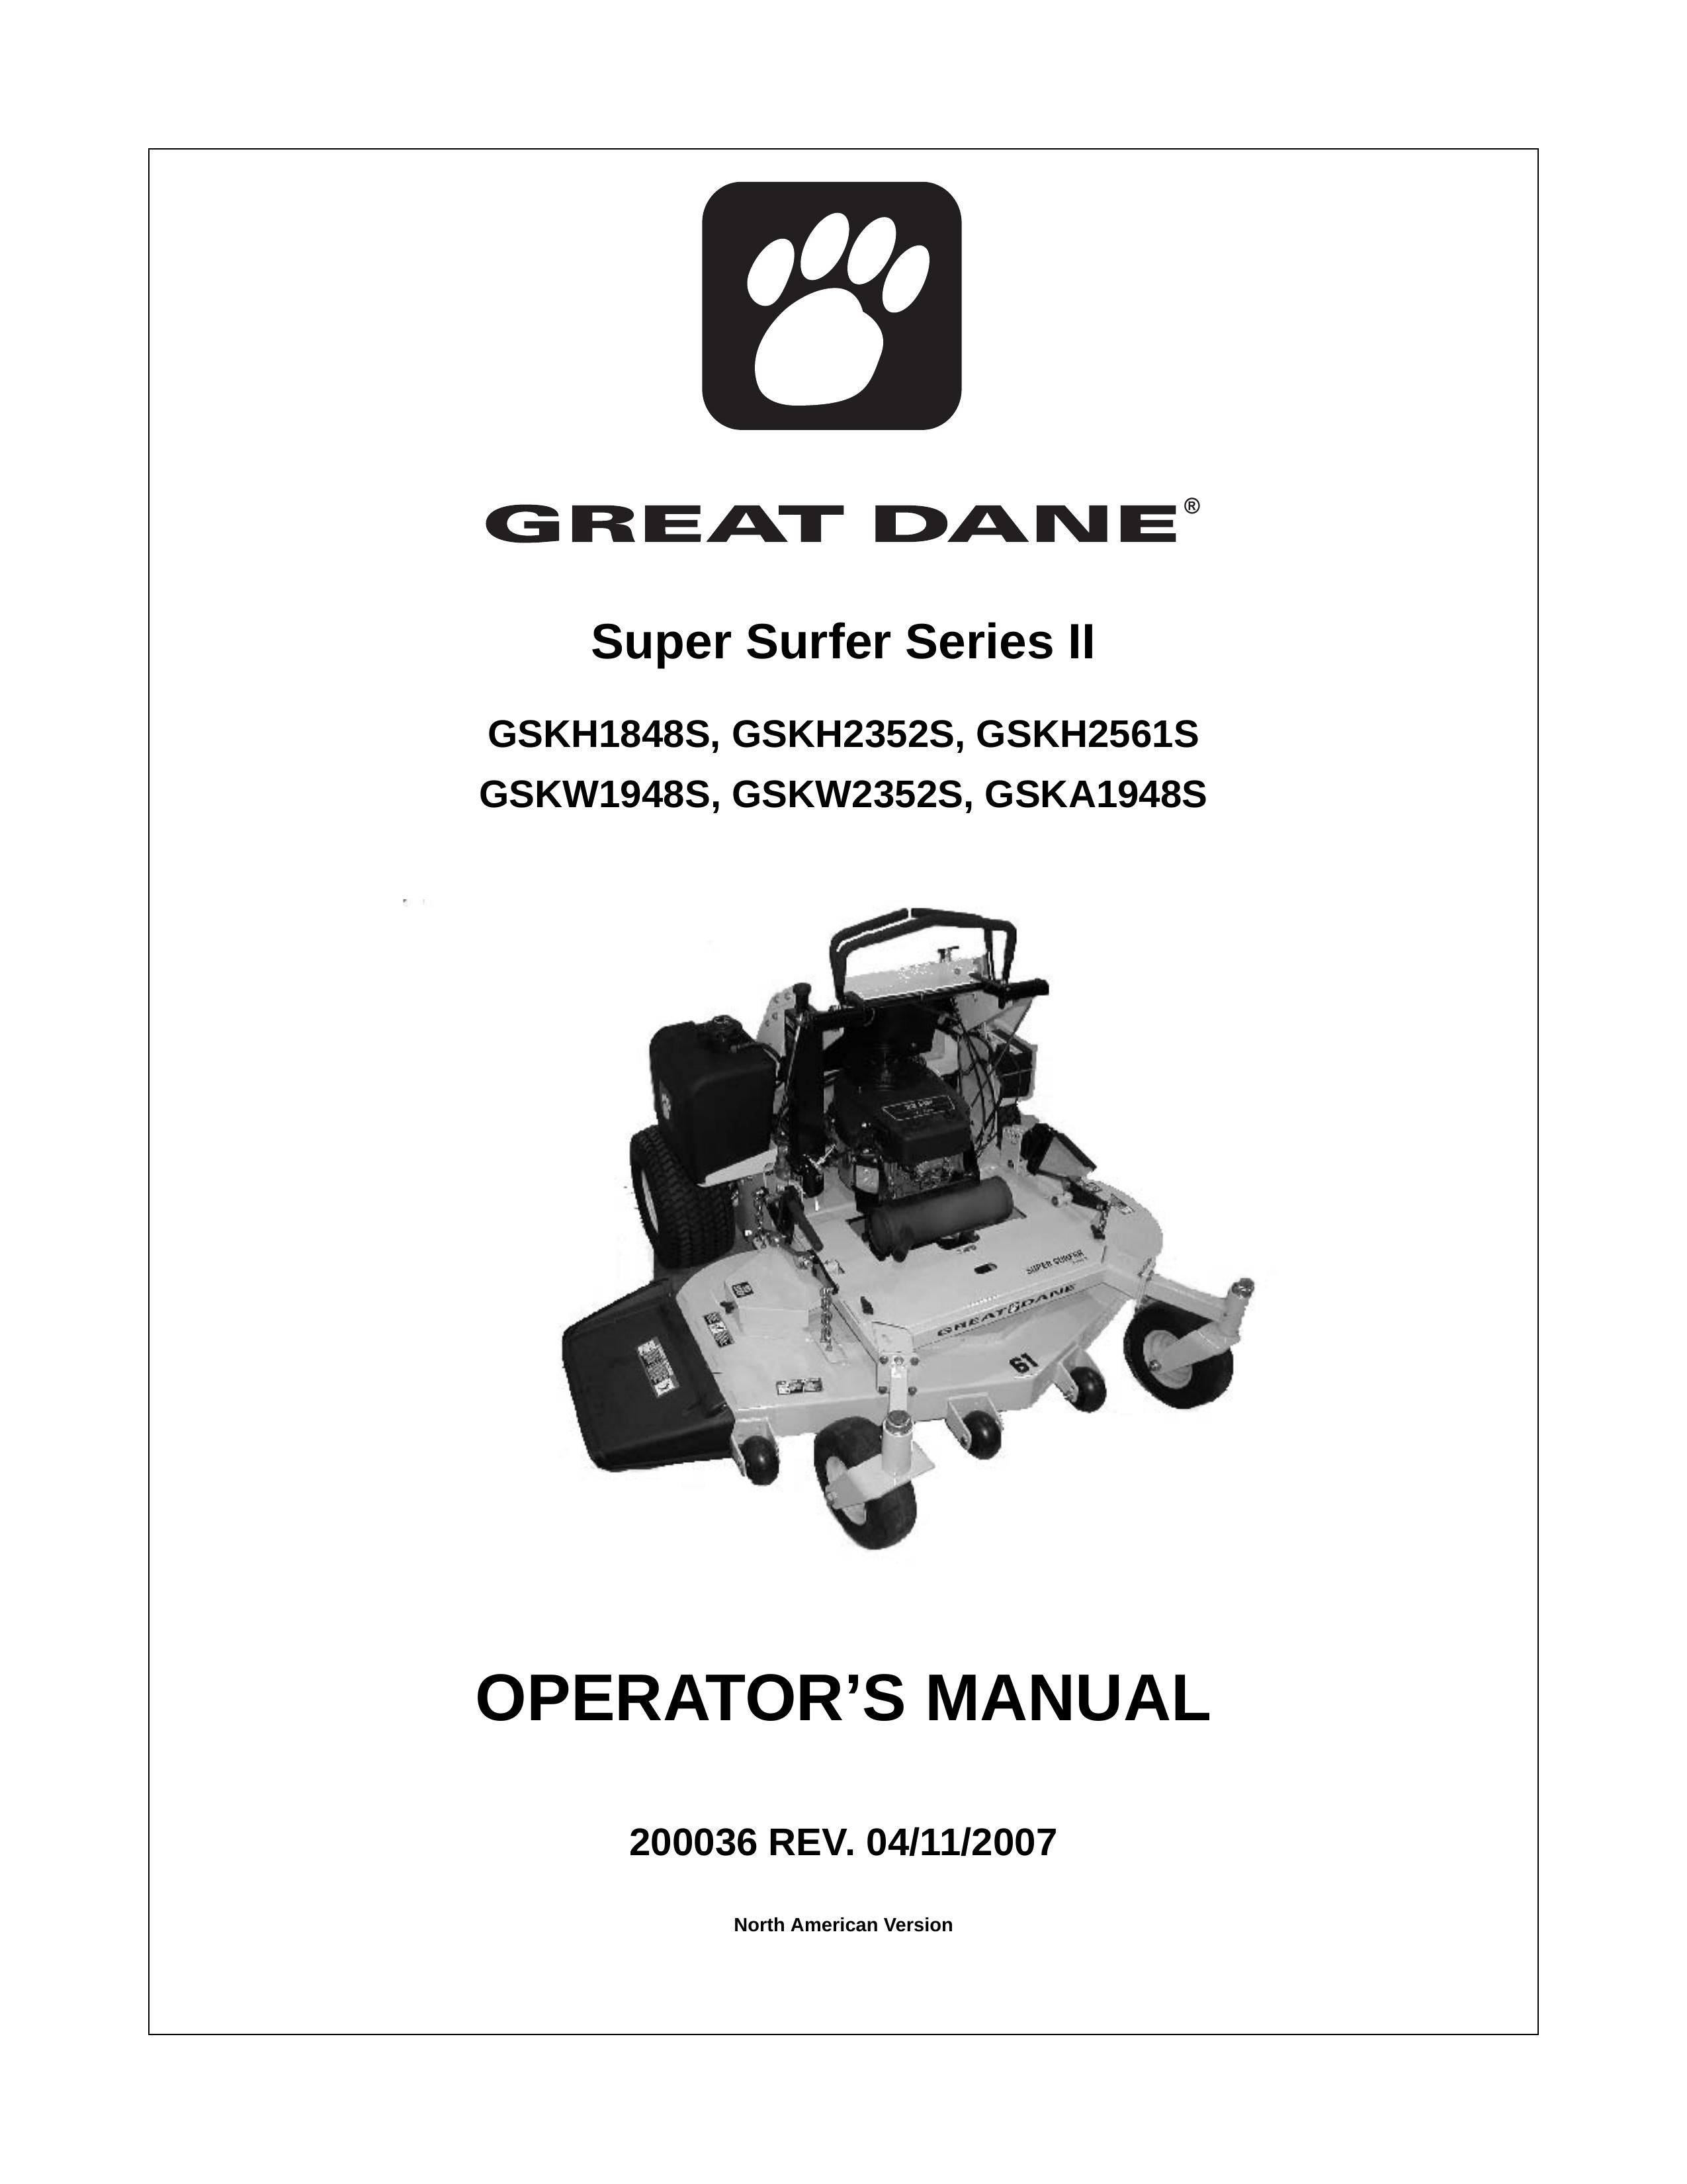 Great Dane GSKH2352S Lawn Mower User Manual